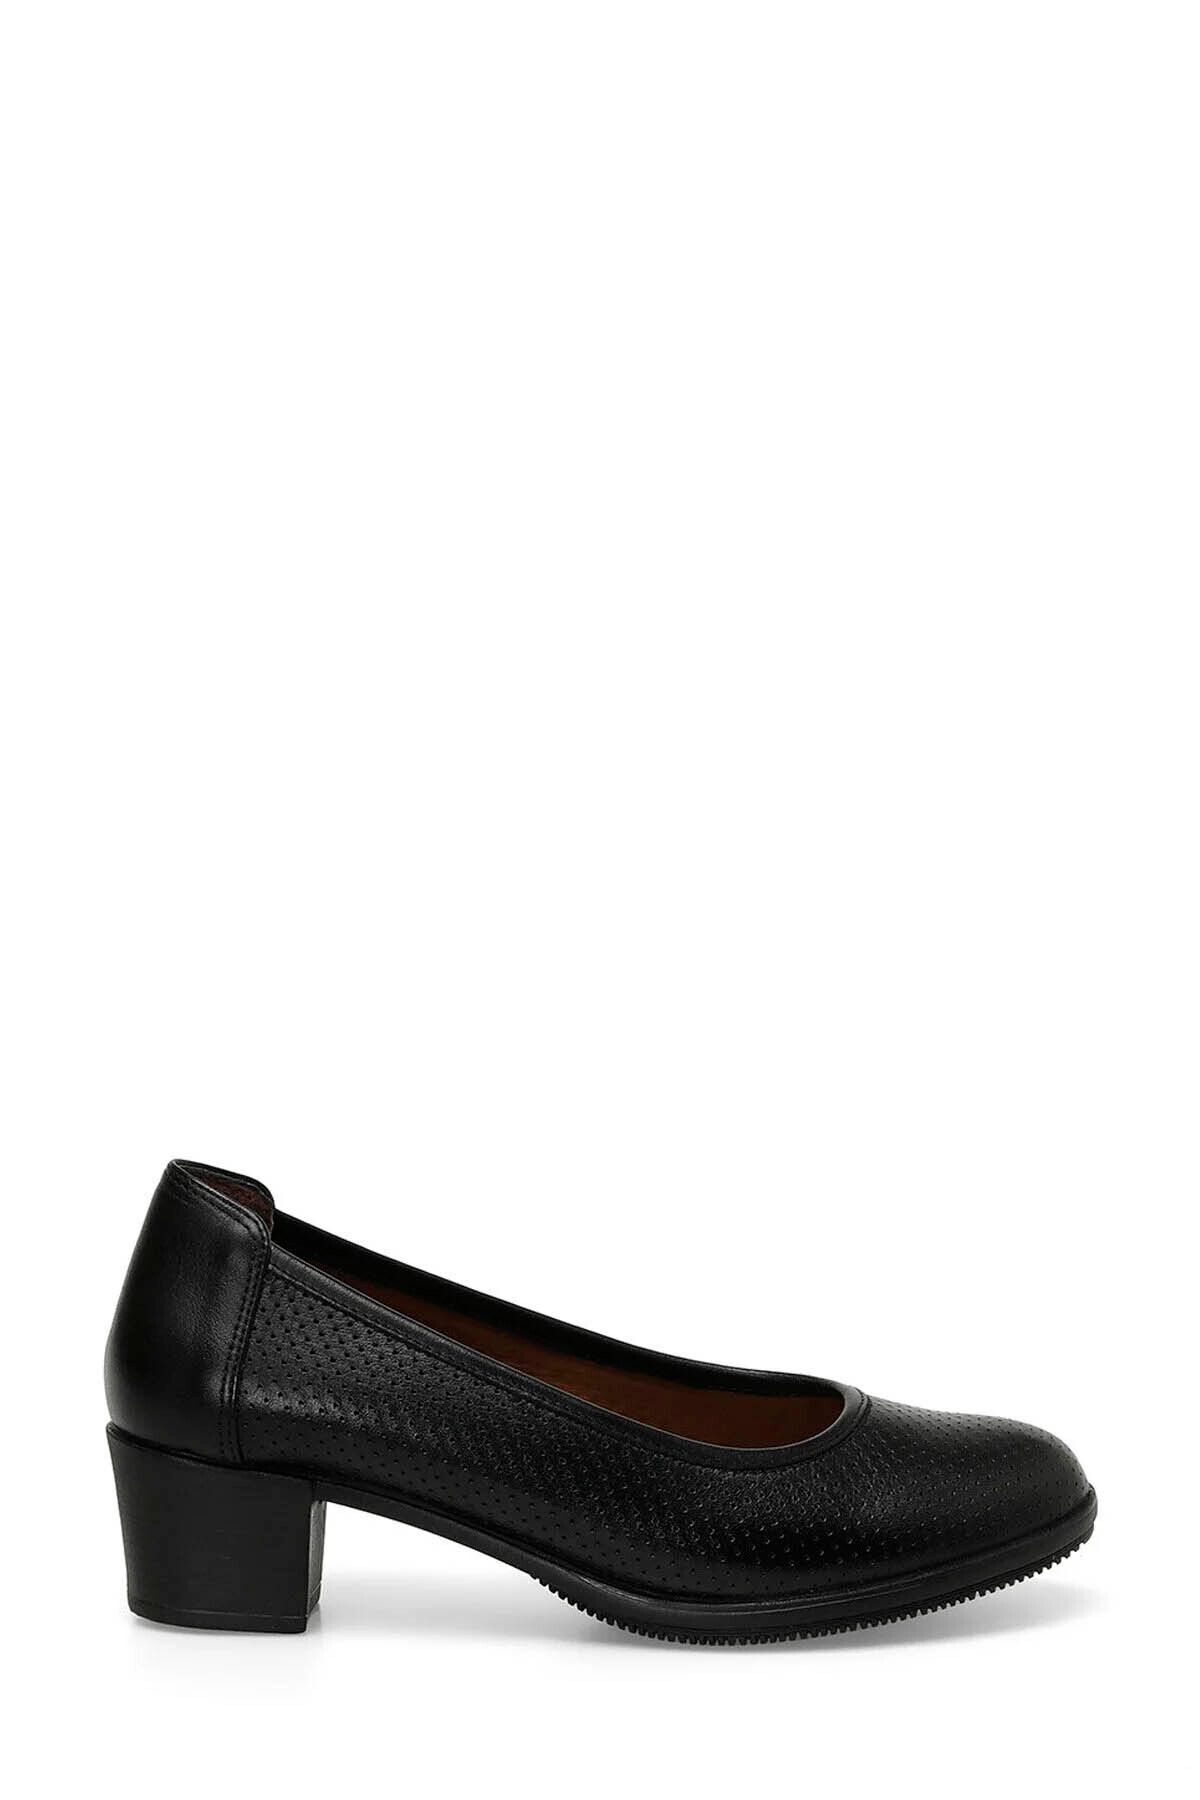 Polaris Kadın Klasik Topuklu Ayakkabı Siyah A101568591 101568591 105053.z4fx